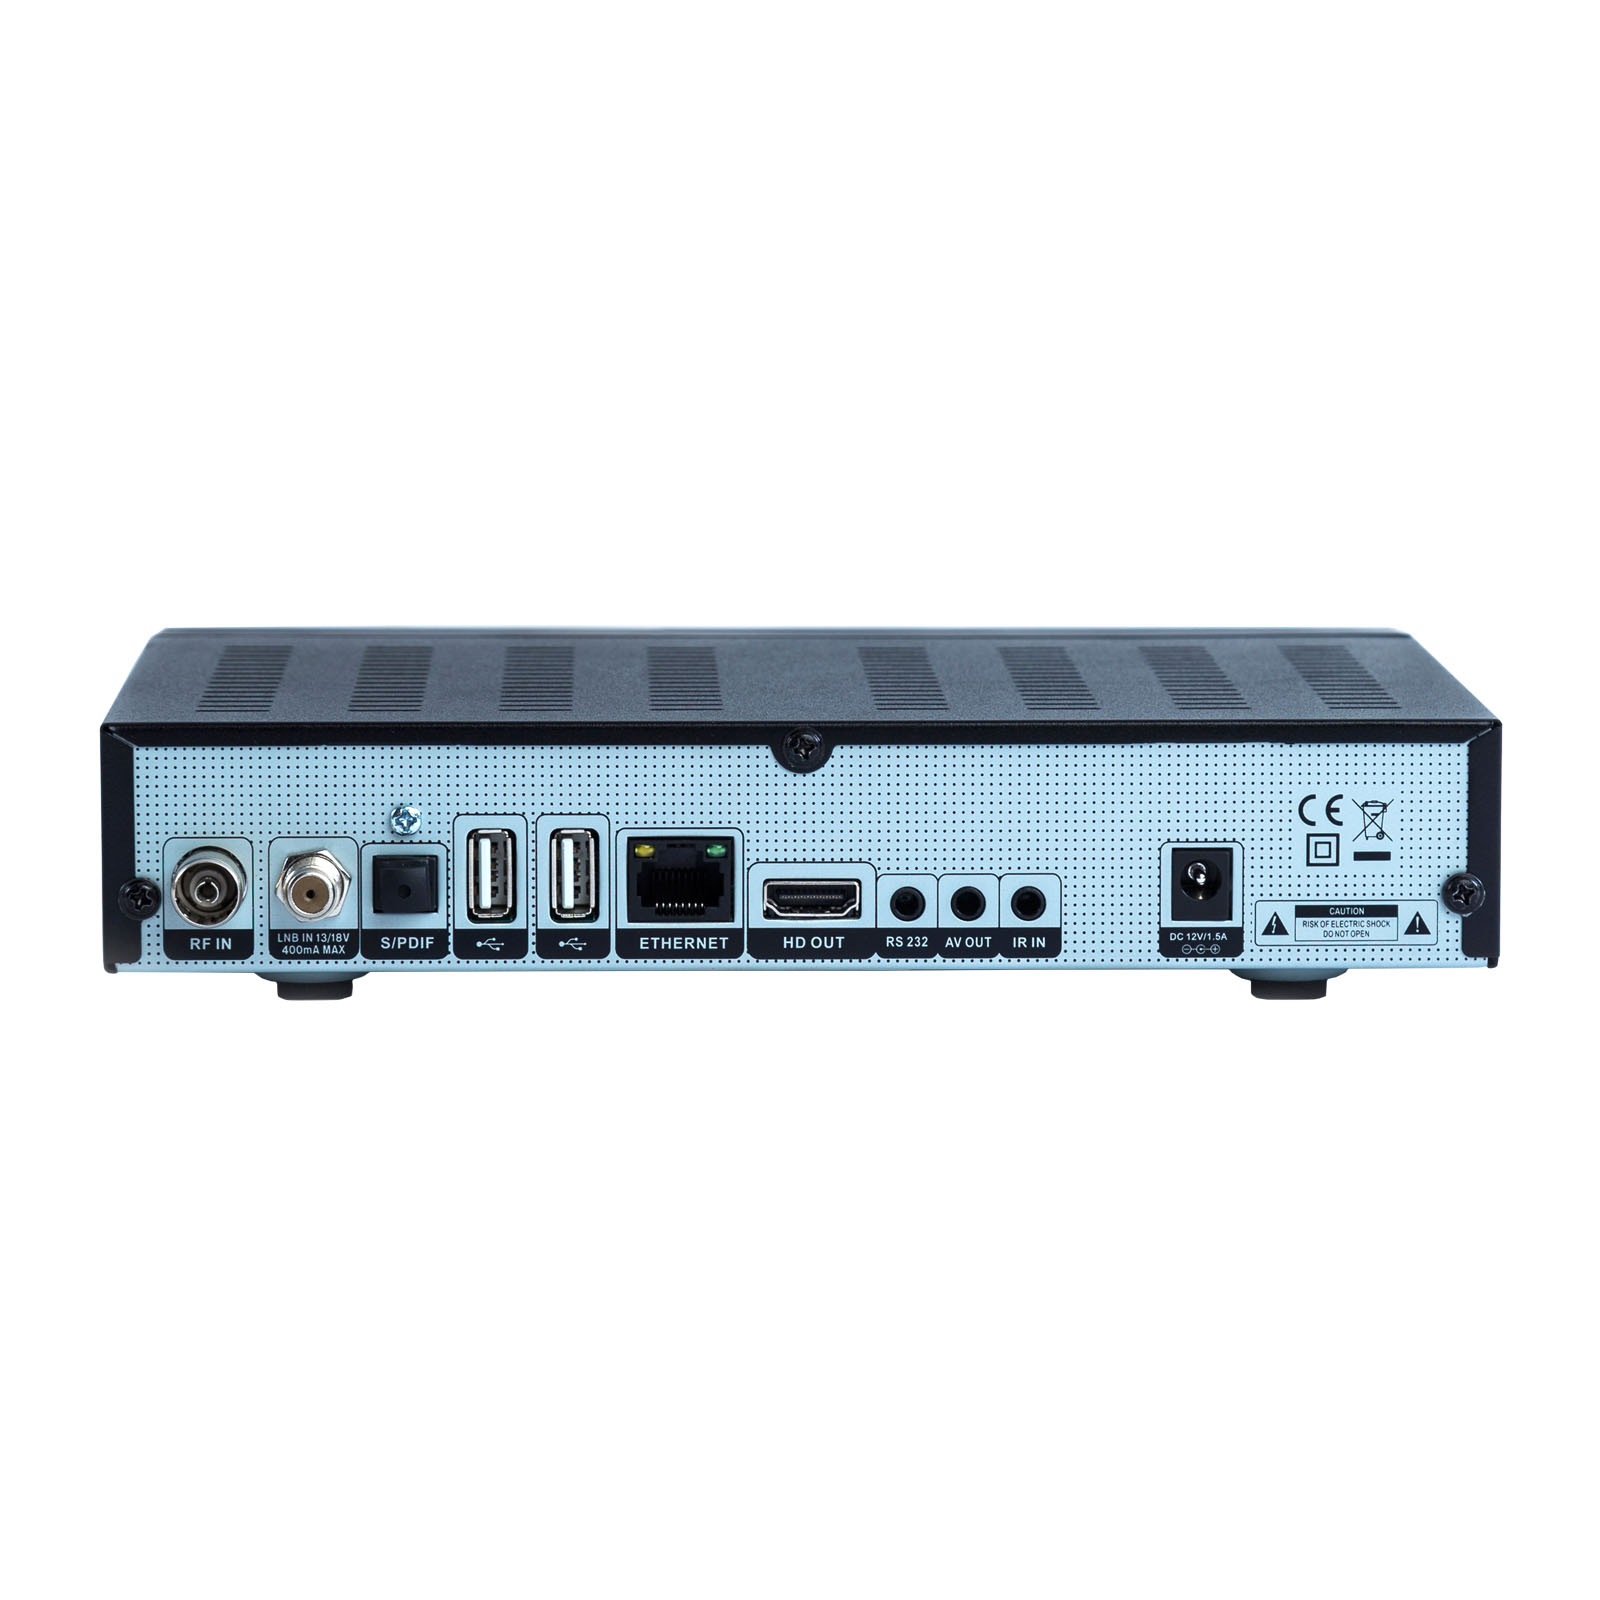 APEBOX CI FULL HD H.265 LAN HDMI 1X DVB-S2 MULTISTREAM 1X DVB-T2/C COMBO RECEIVER